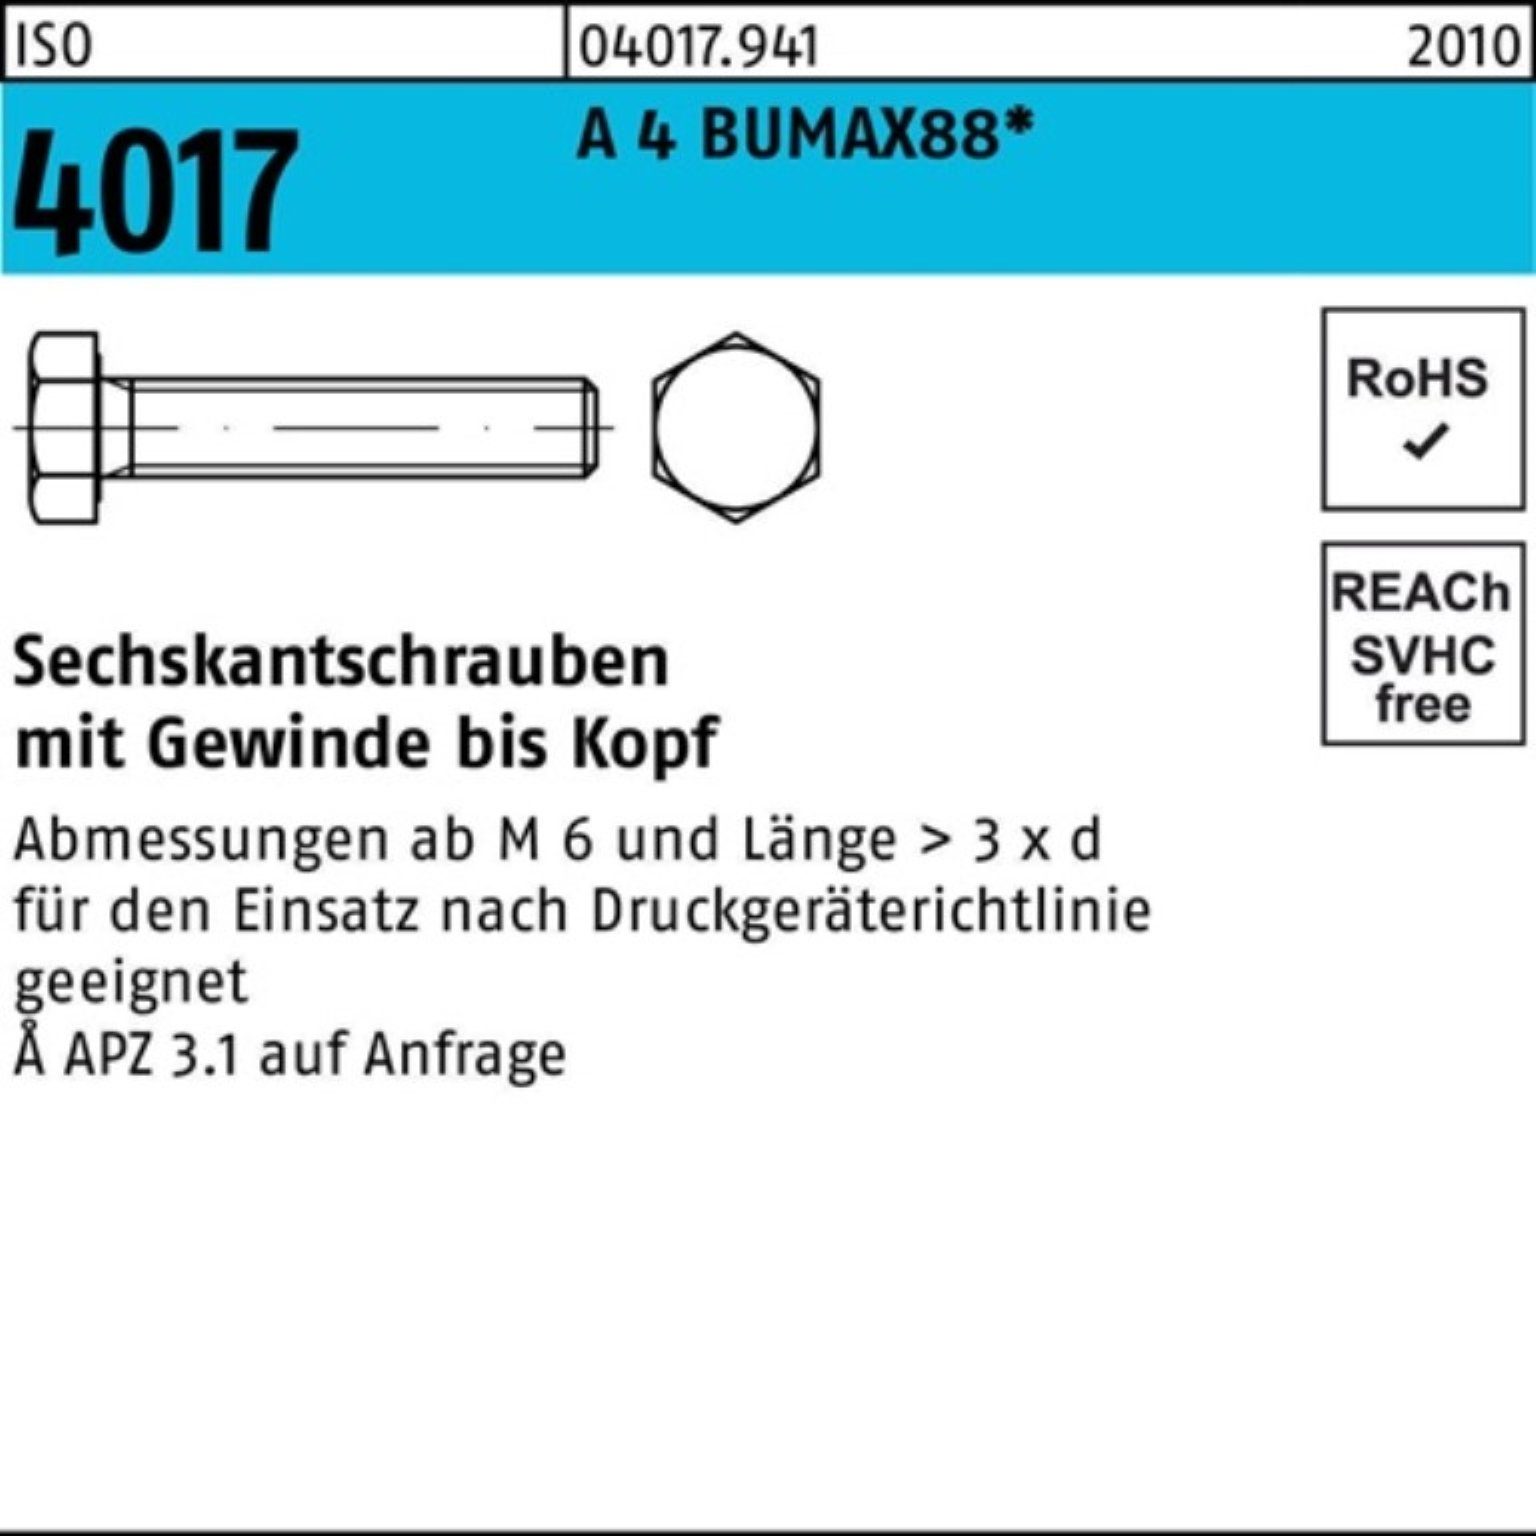 Bufab Sechskantschraube 100er Pack Sechskantschraube ISO 4017 VG M8x 70 A 4 BUMAX88 50 Stück